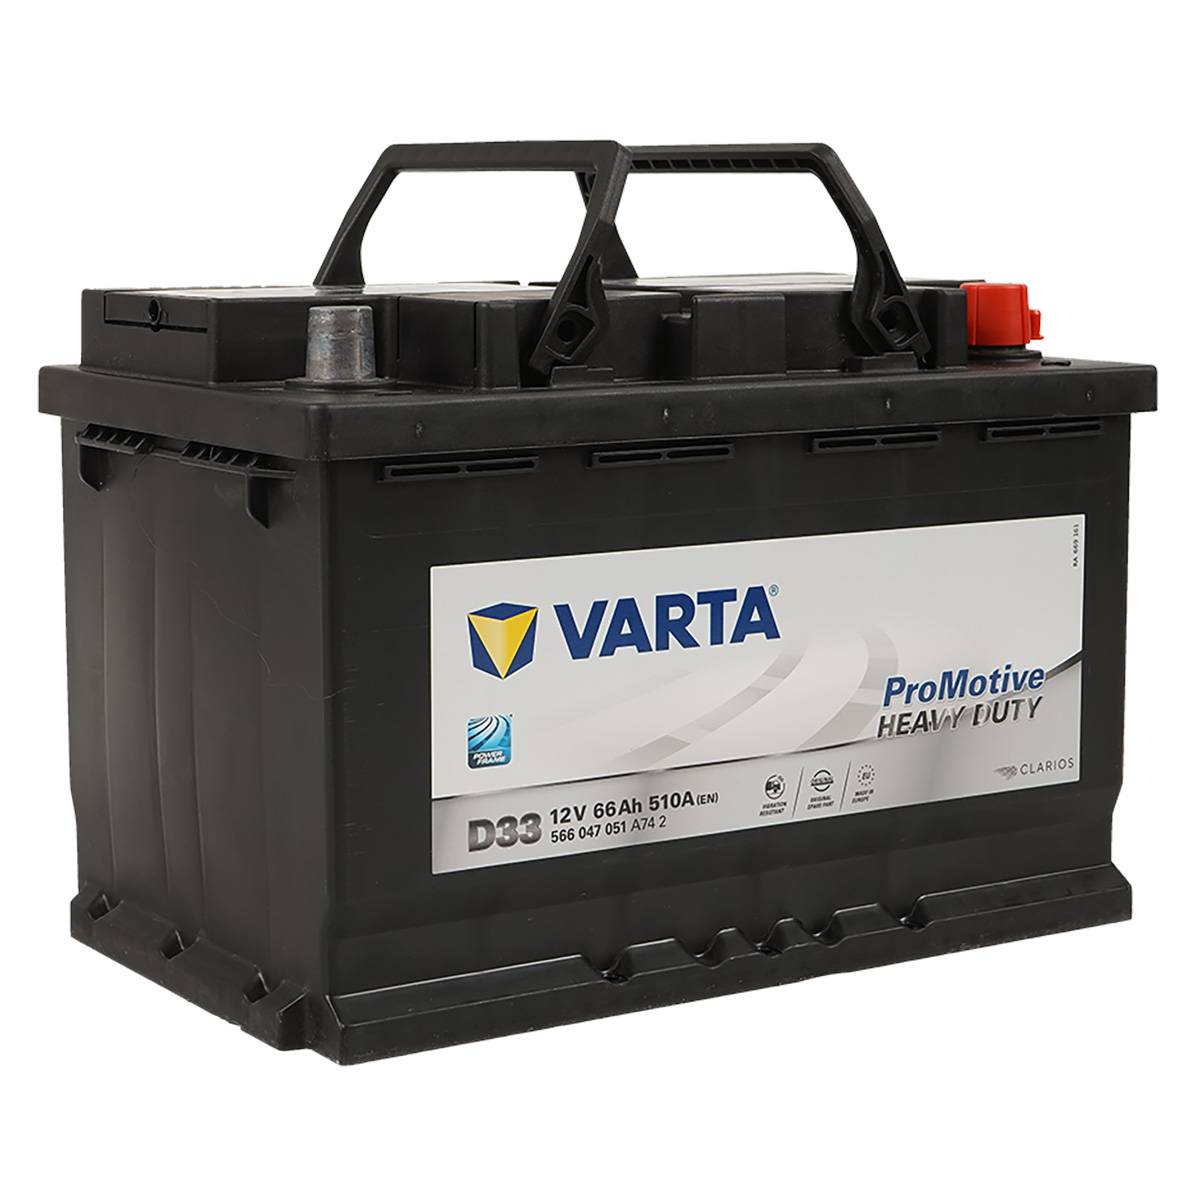 VARTA D33 ProMotive Heavy Duty 12V 66Ah 510A LKW Batterie 566 047 051, Starterbatterie, LKW & Nutzfahrzeuge, Kfz, Batterien für